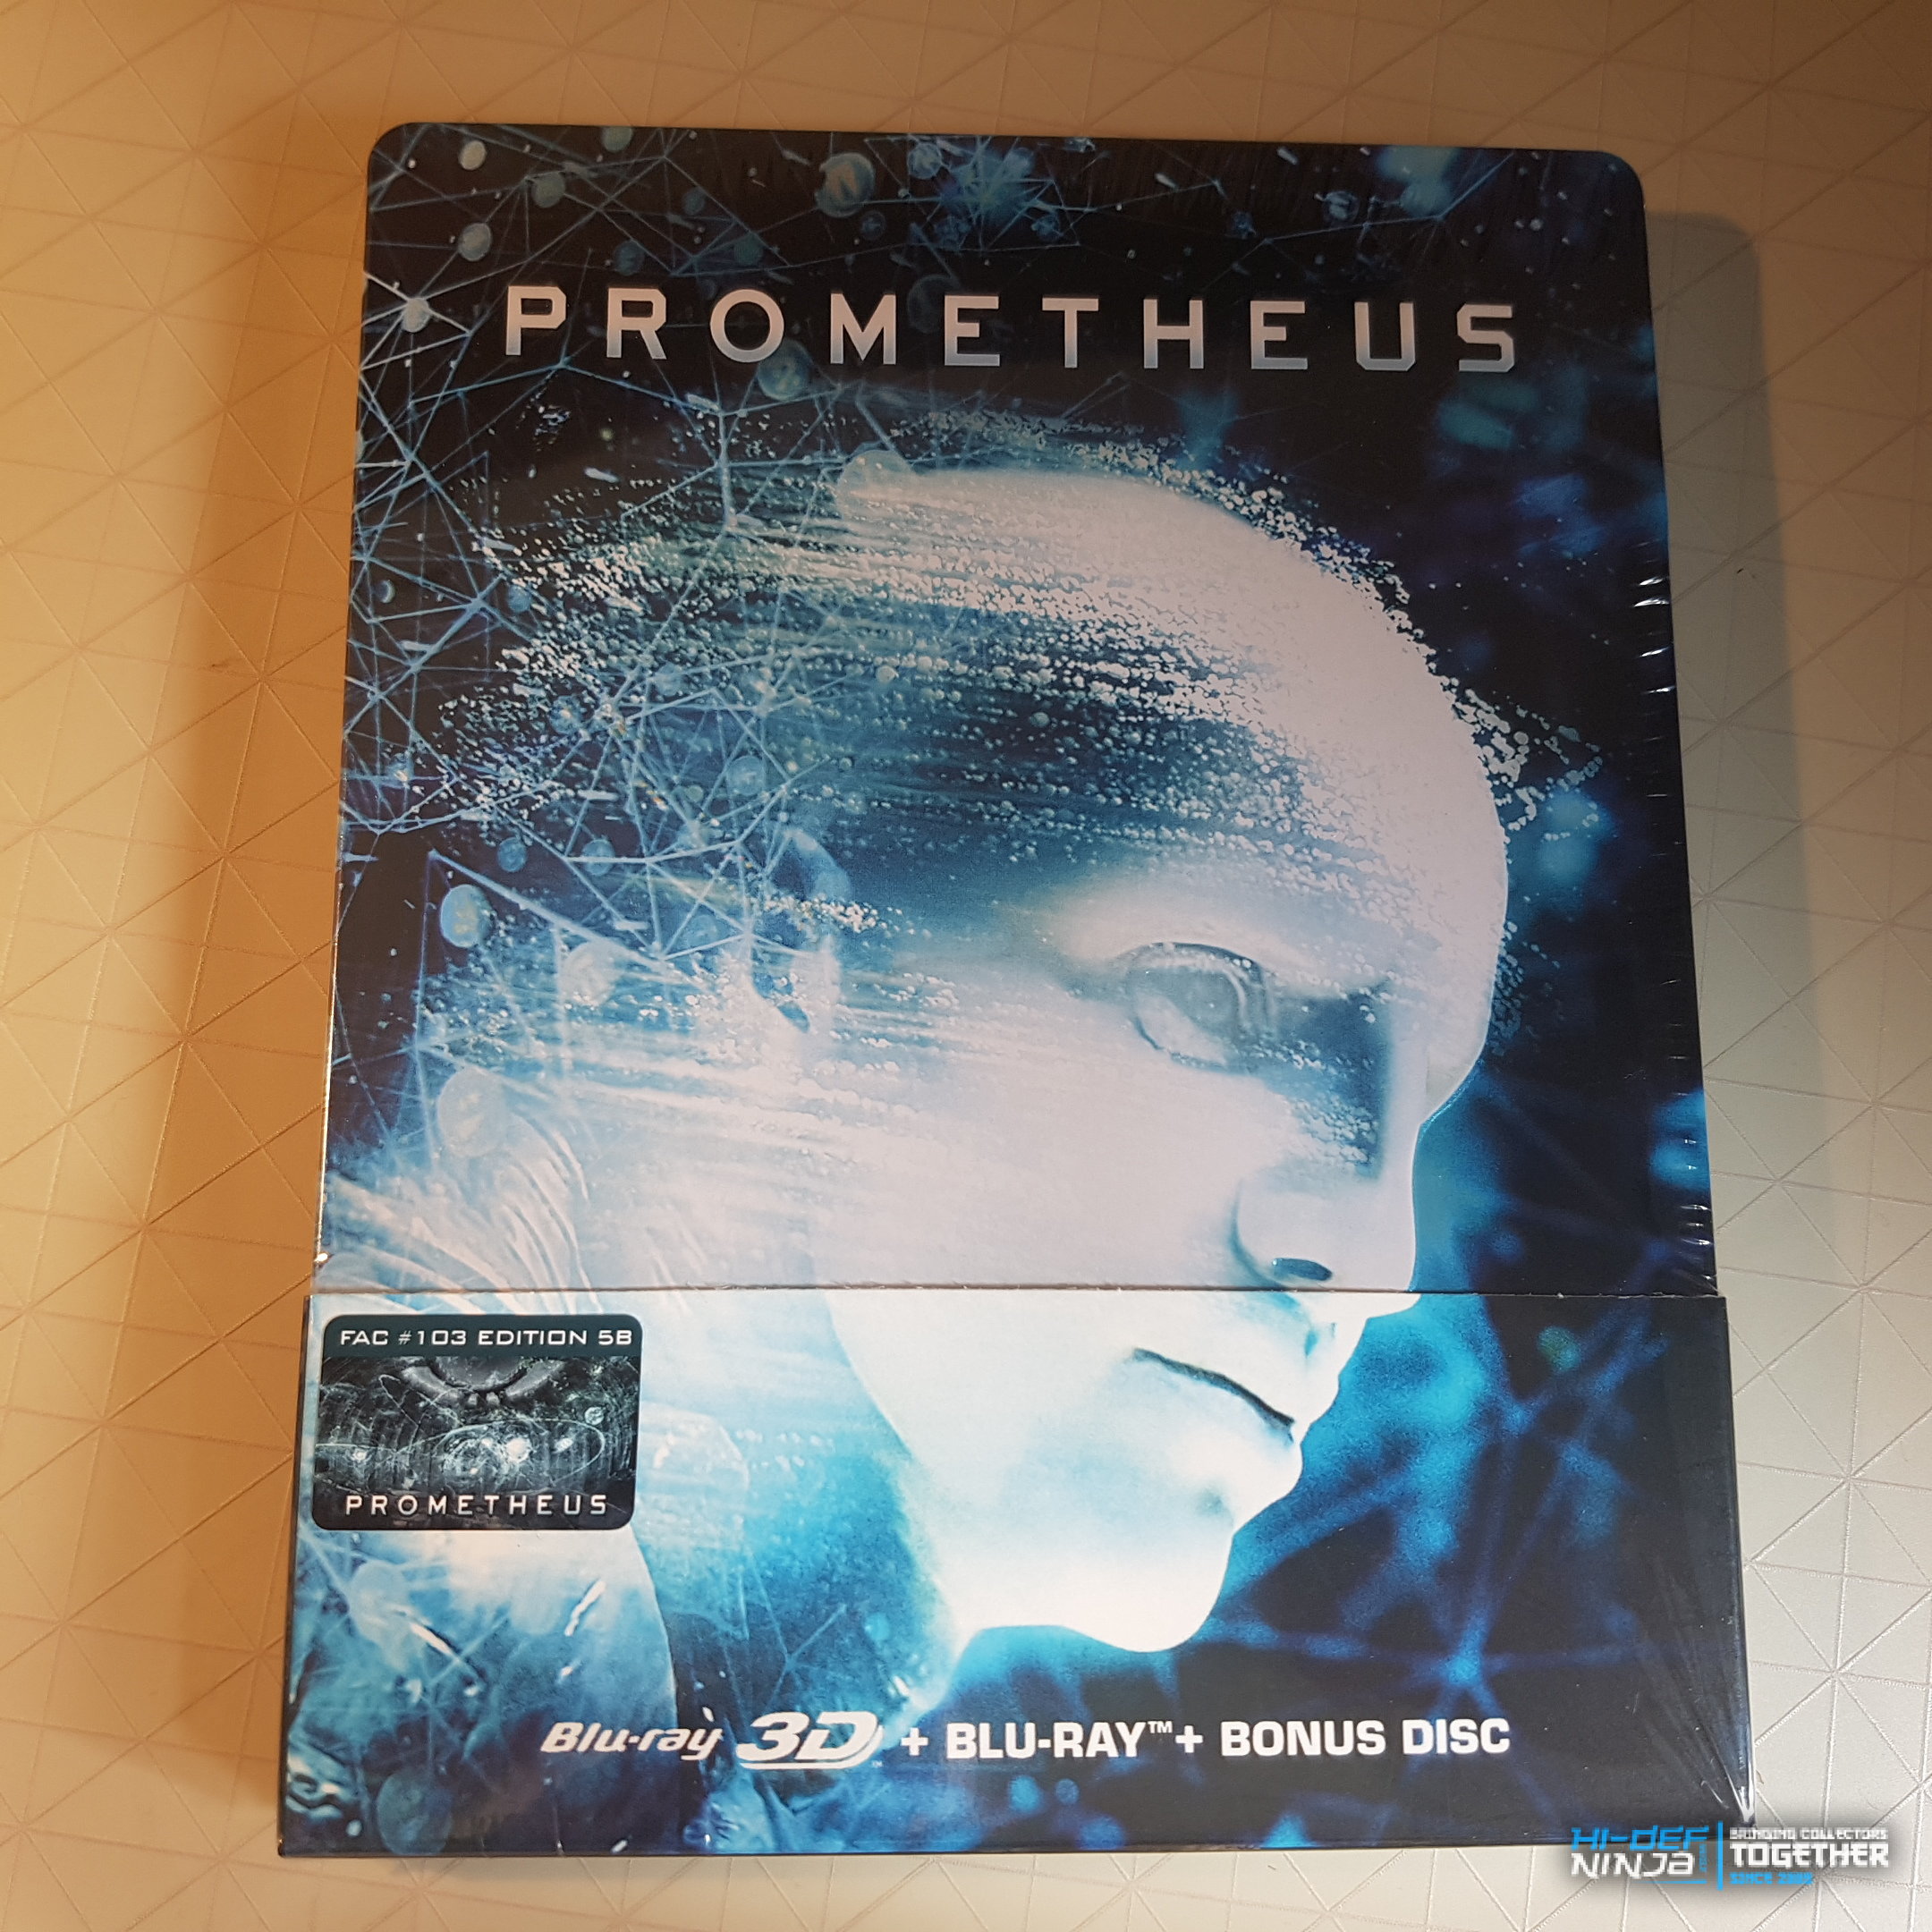 Prometheus FAC